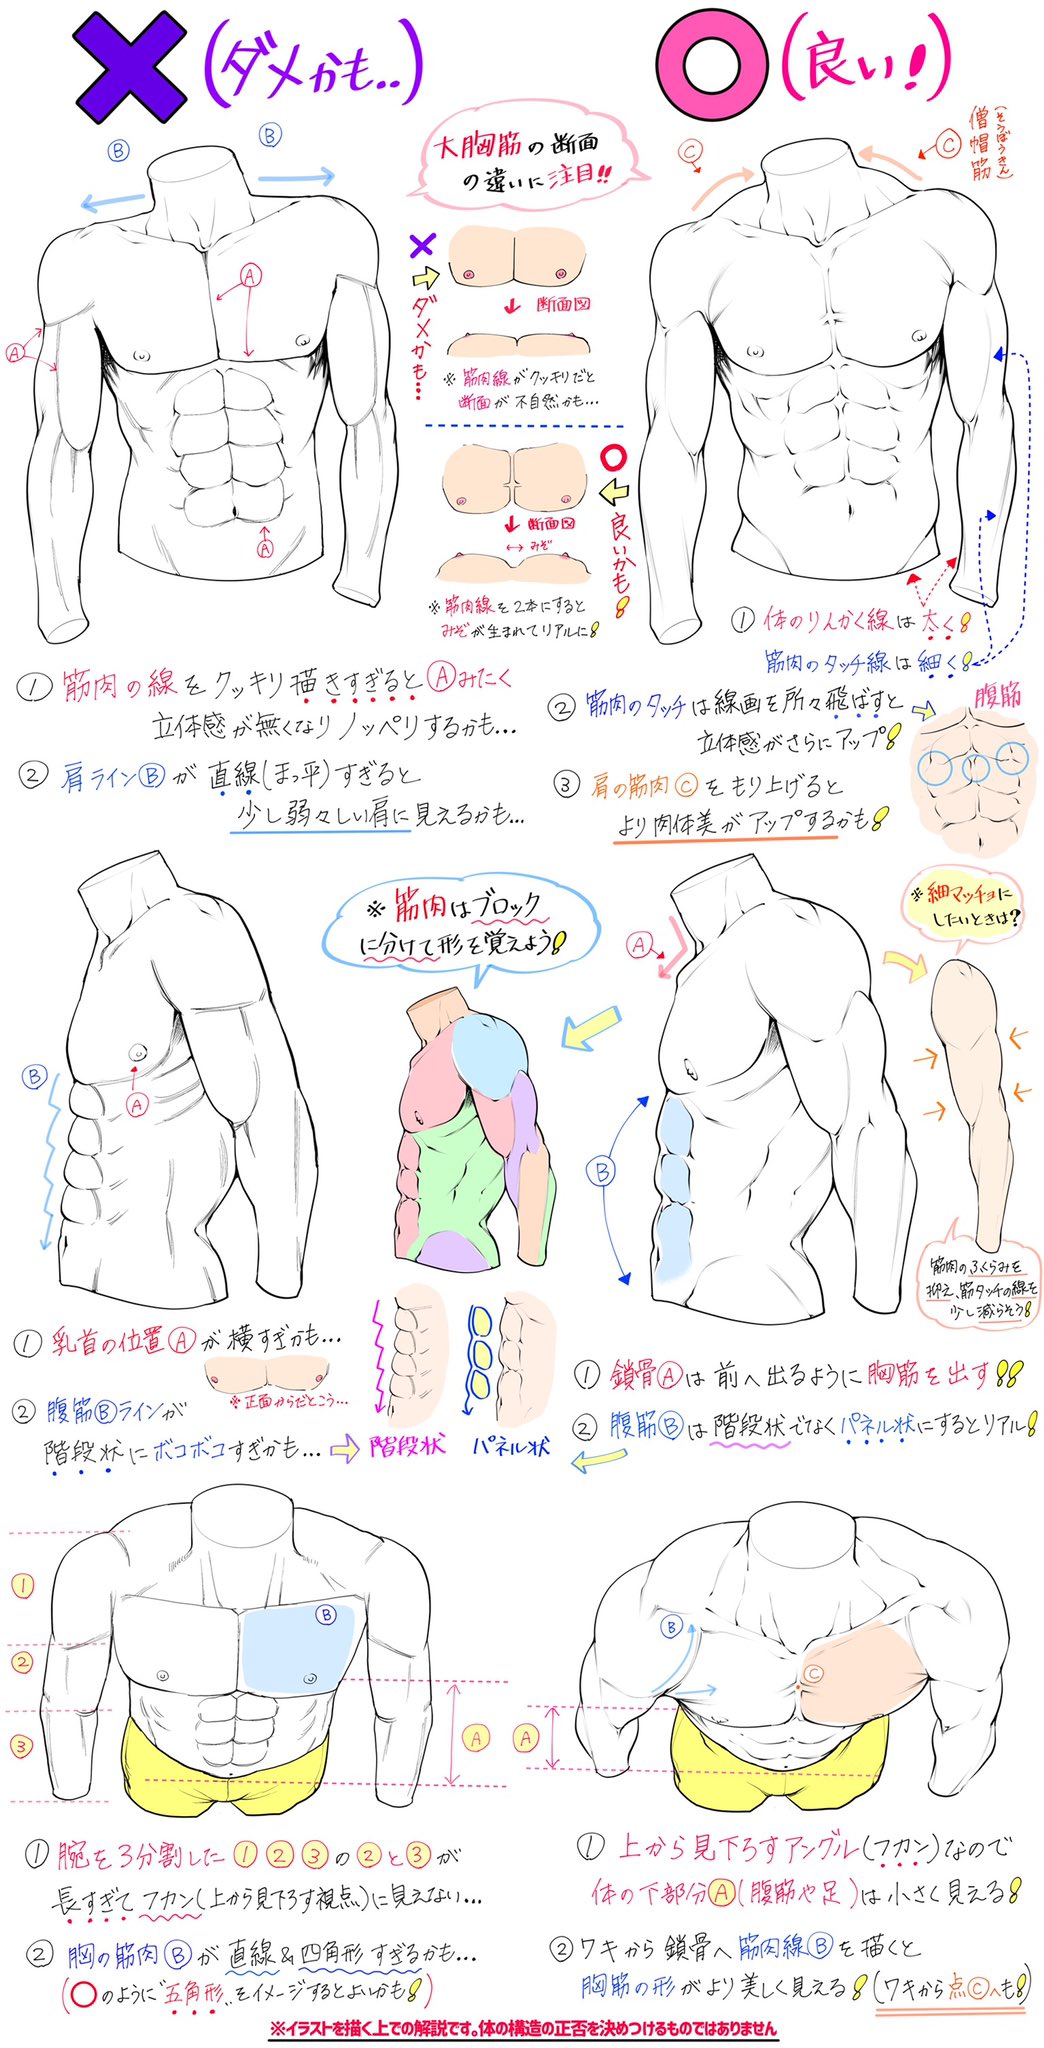 吉村拓也 イラスト講座 男性の筋肉の描き方 が上達する ダメかも と 良いかも T Co Tabxbojjvj Twitter